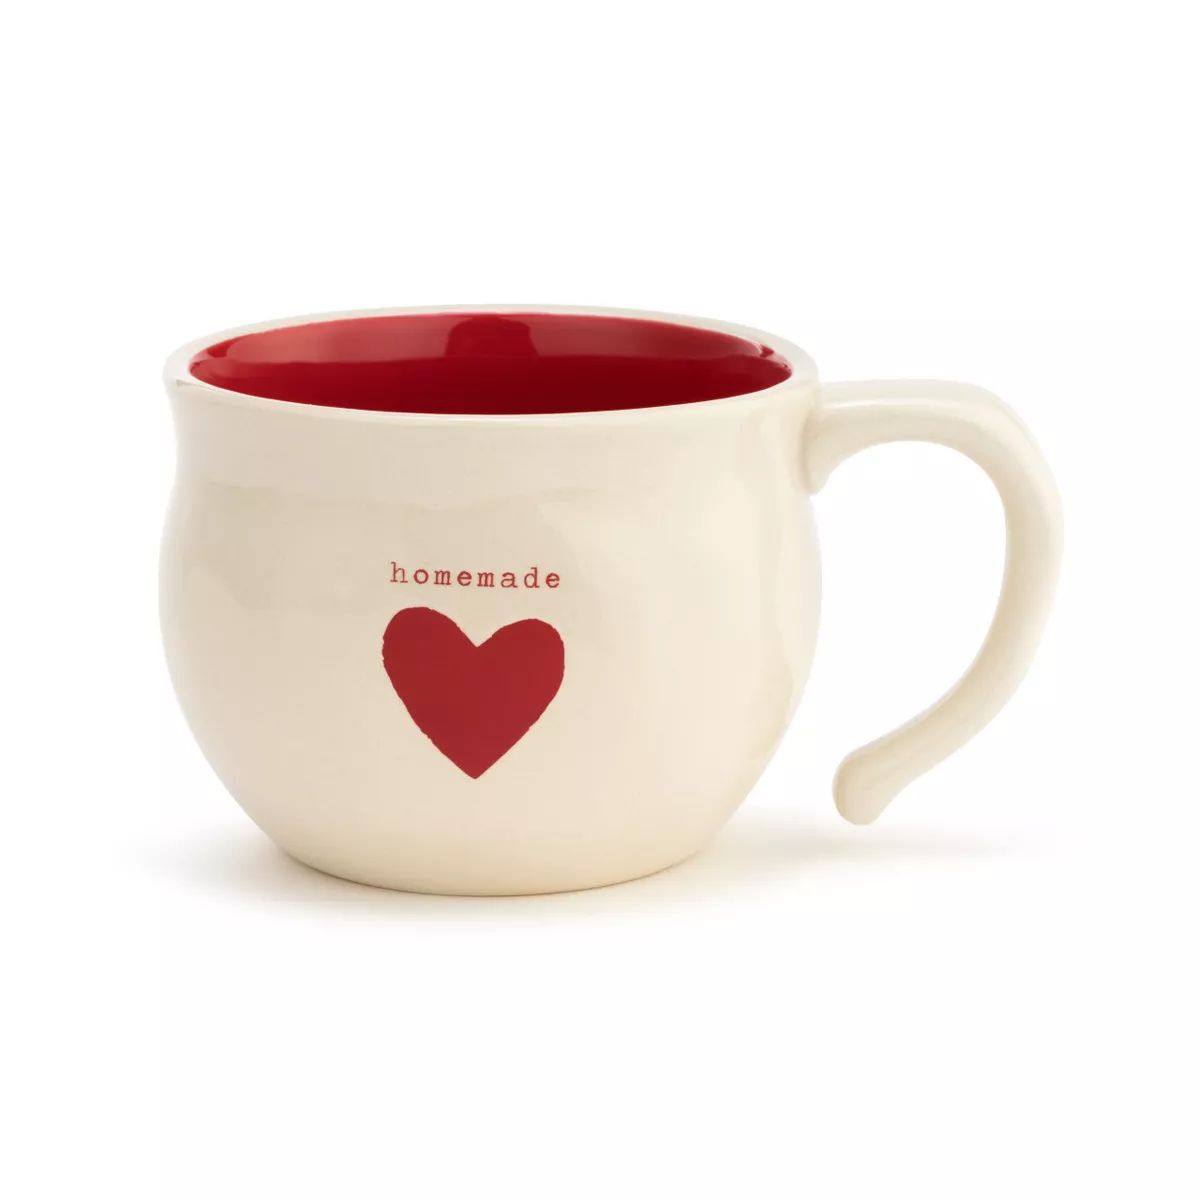 DEMDACO Homemade Heart Soup Bowl | Target